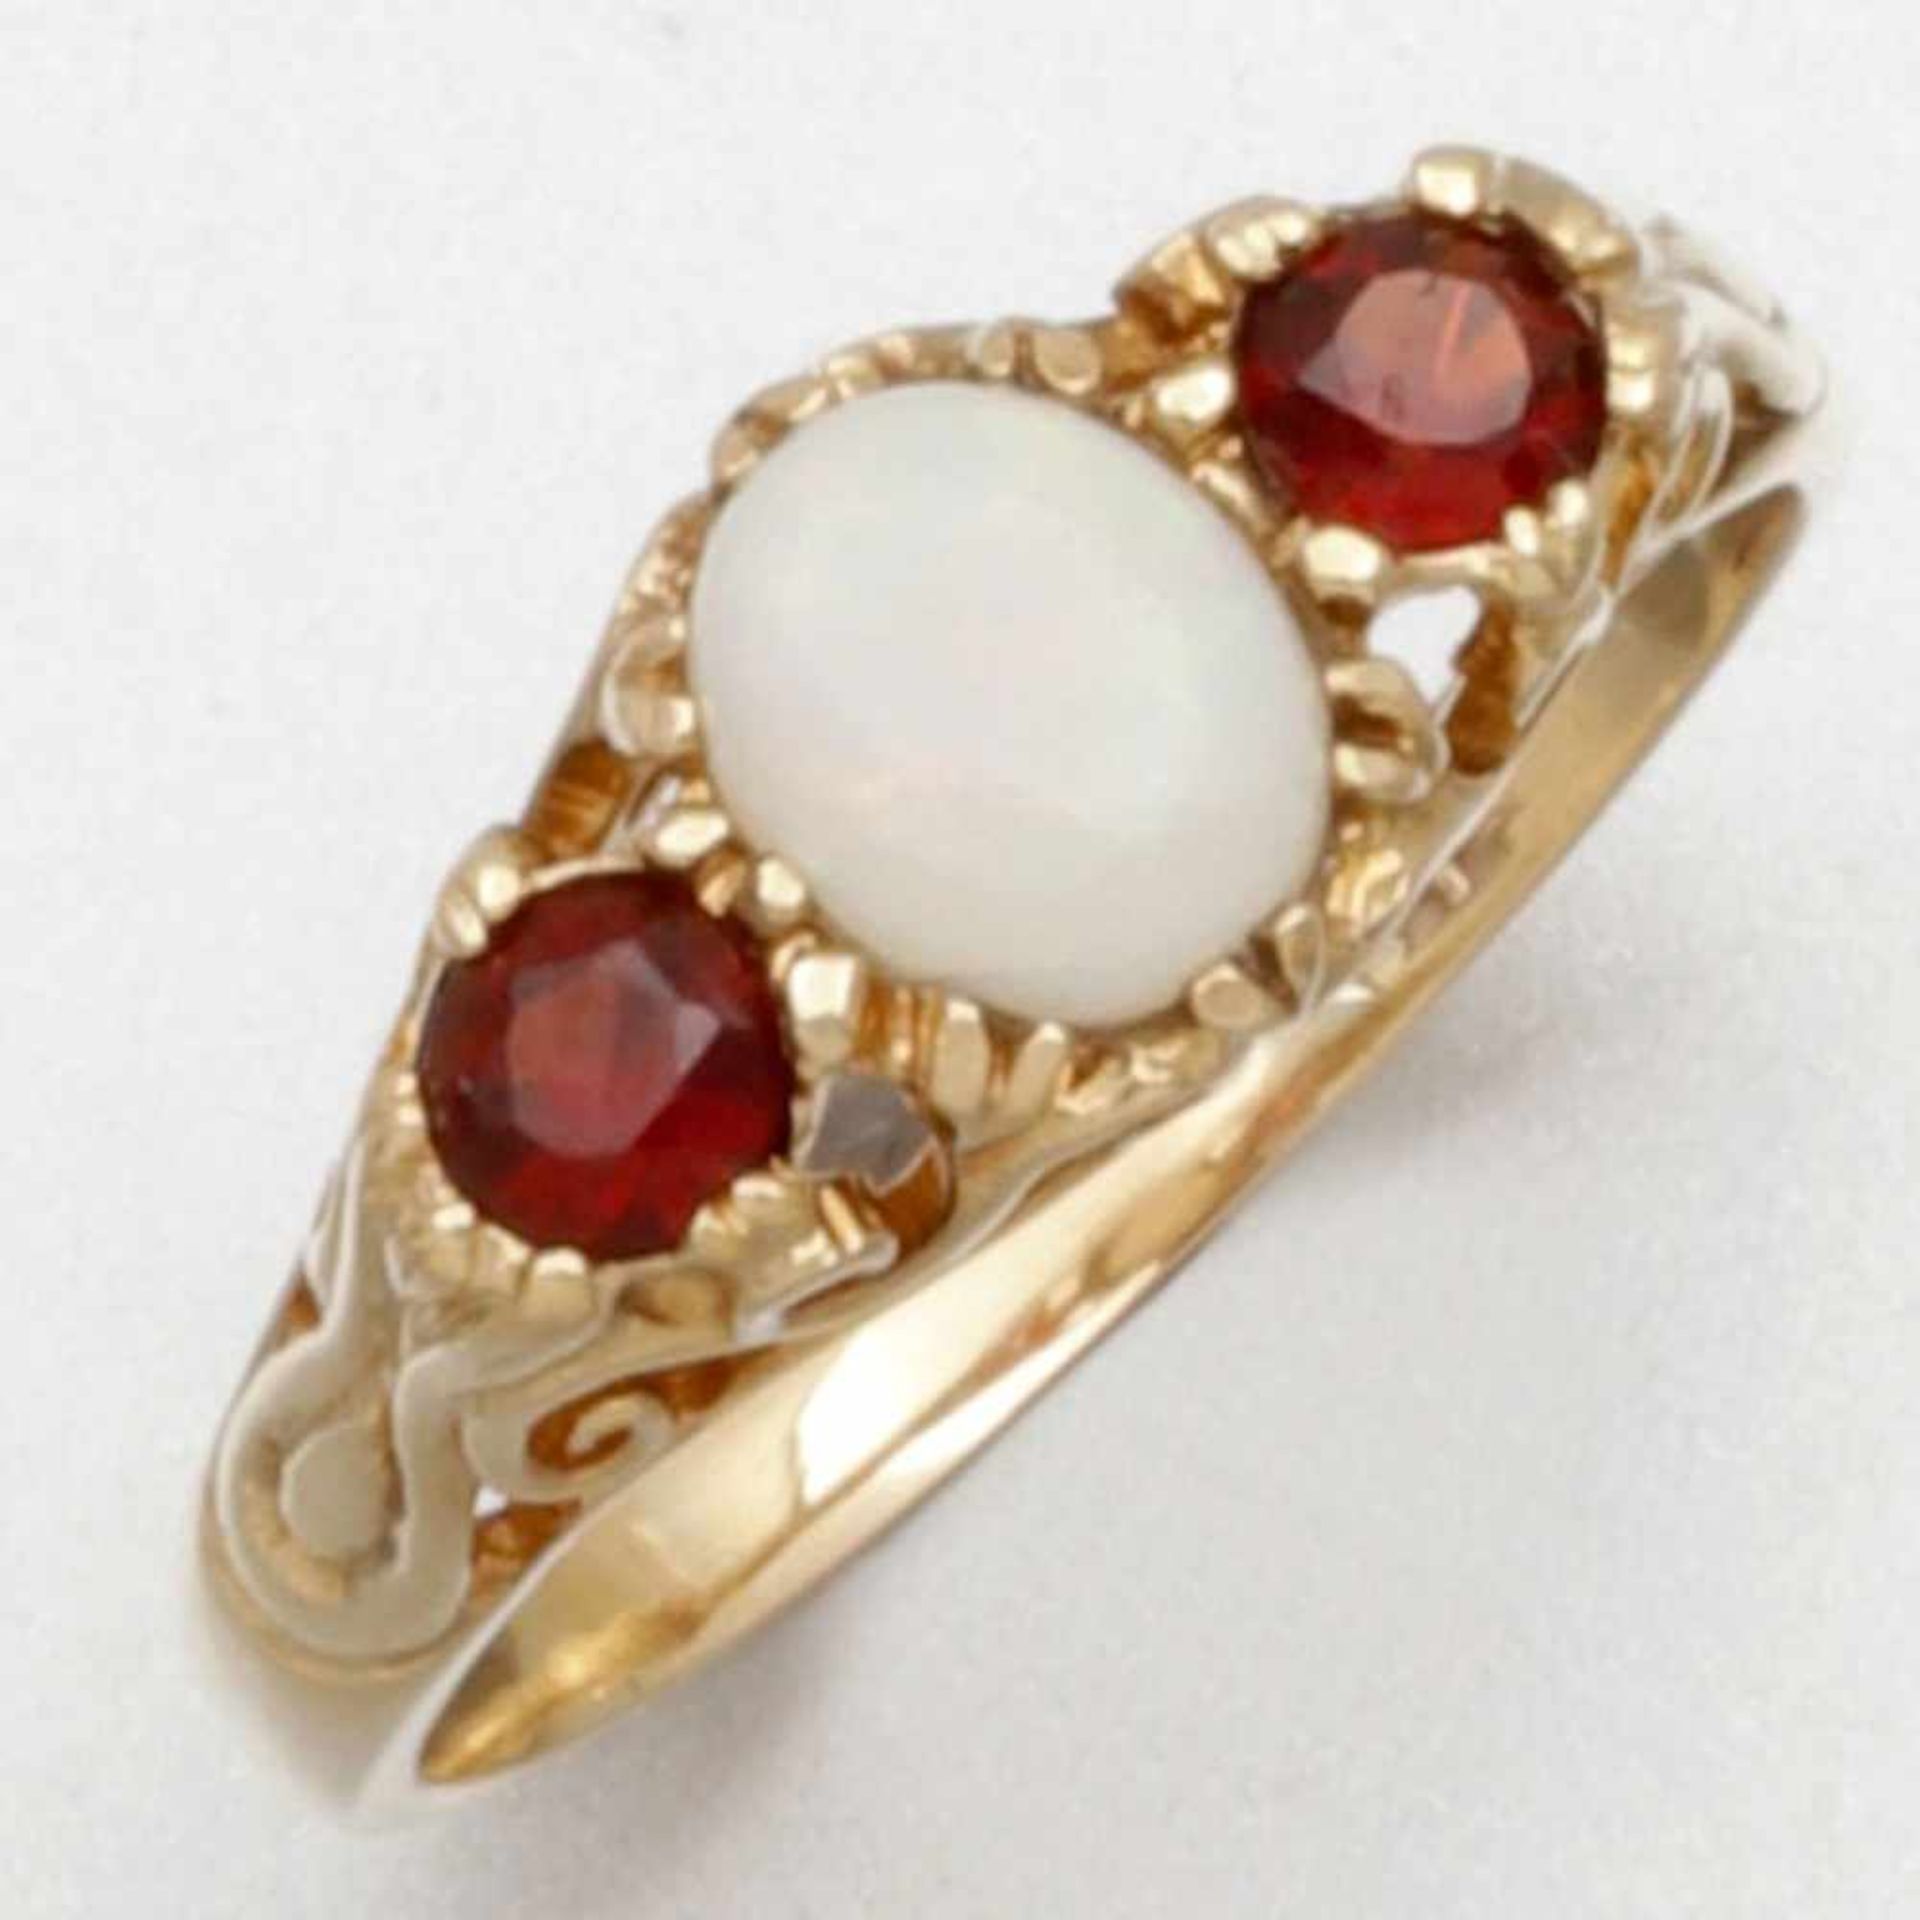 Opal-Ring mit Granaten333/- Gelbgold, ungestempelt. Gewicht: 1,9g. 1 Opal im Cabochonschliff D. 0,